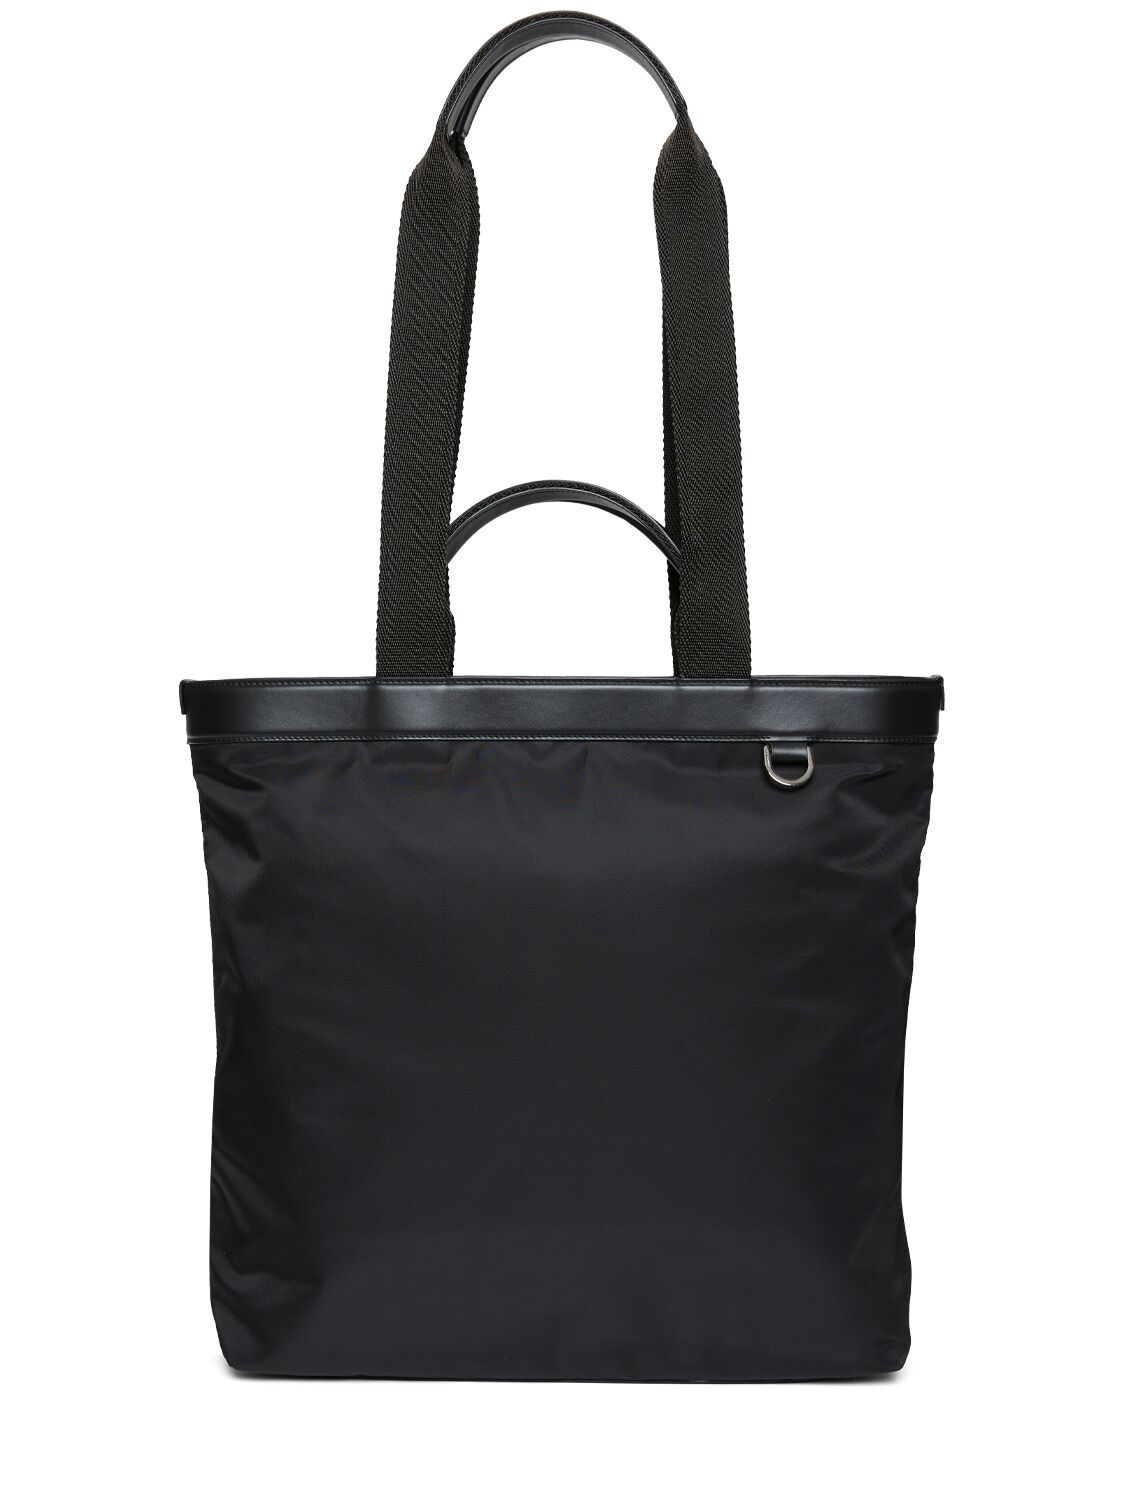 Shop Dolce & Gabbana Rubberized Logo Nylon Tote Bag In Black